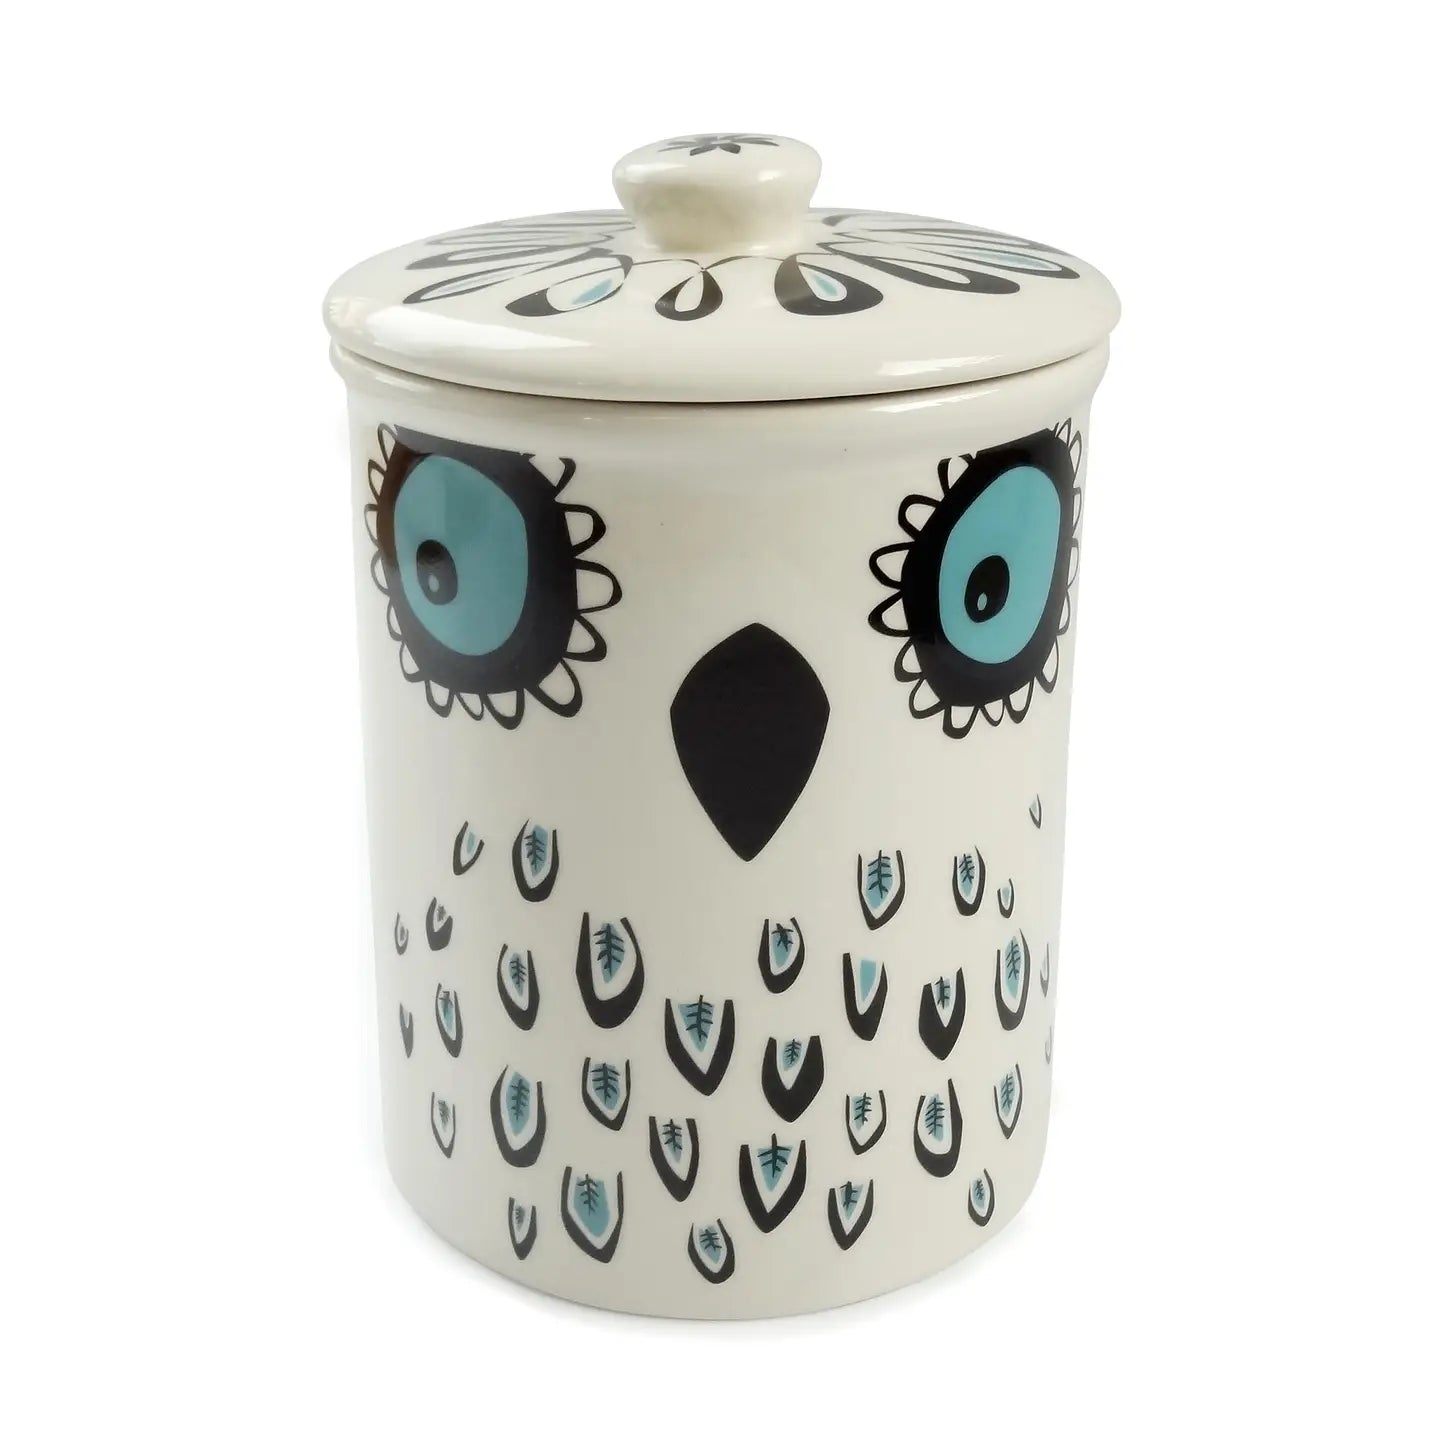 Ceramic owl storage jar